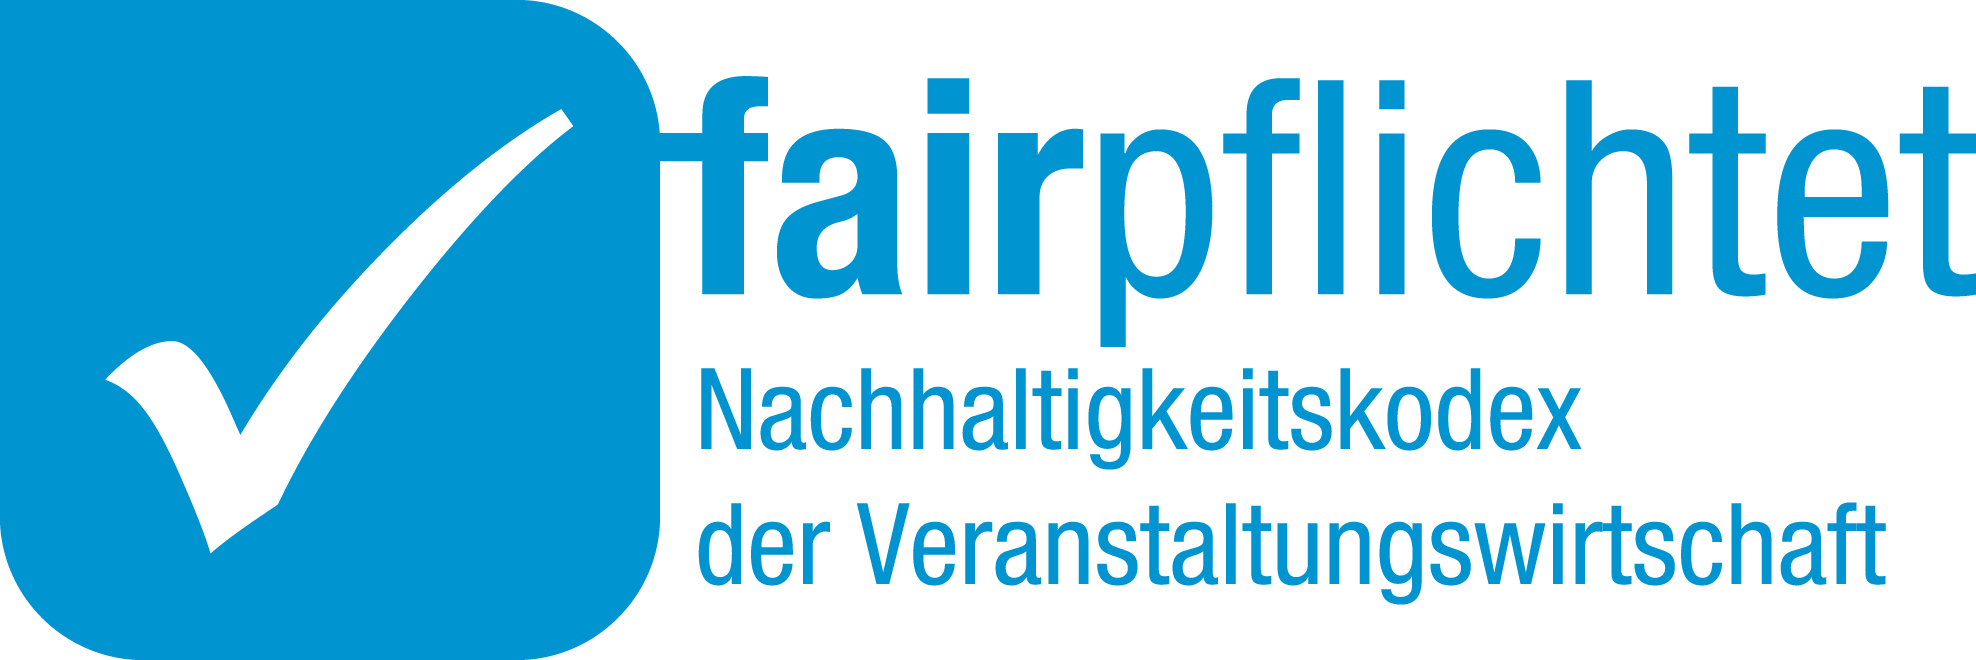 fairpflichtet_Logo, Congress Centrum Alpbach, Tirol,Österreich